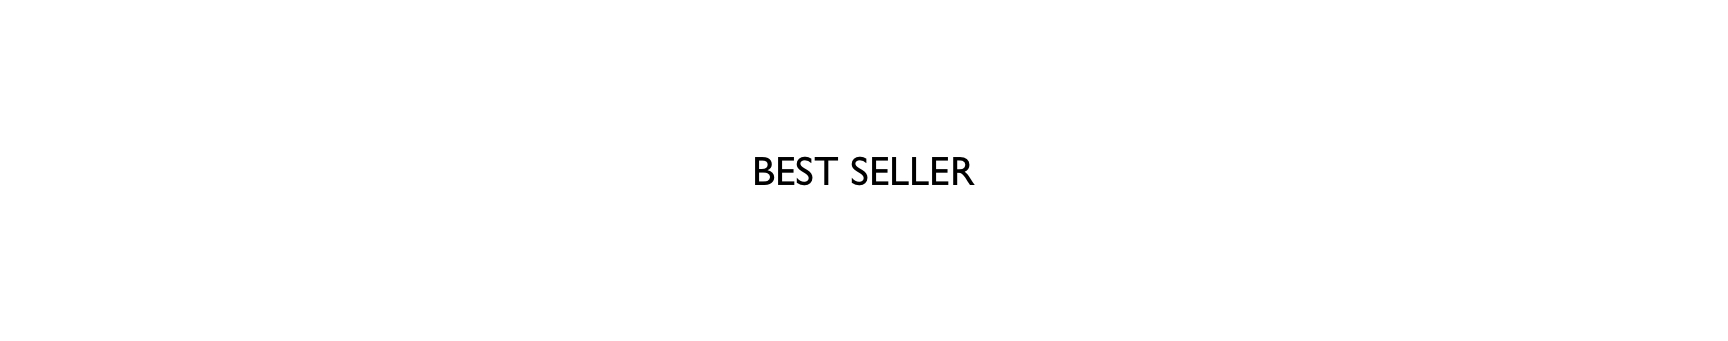 MAMA-bestseller-banner_125219.jpg